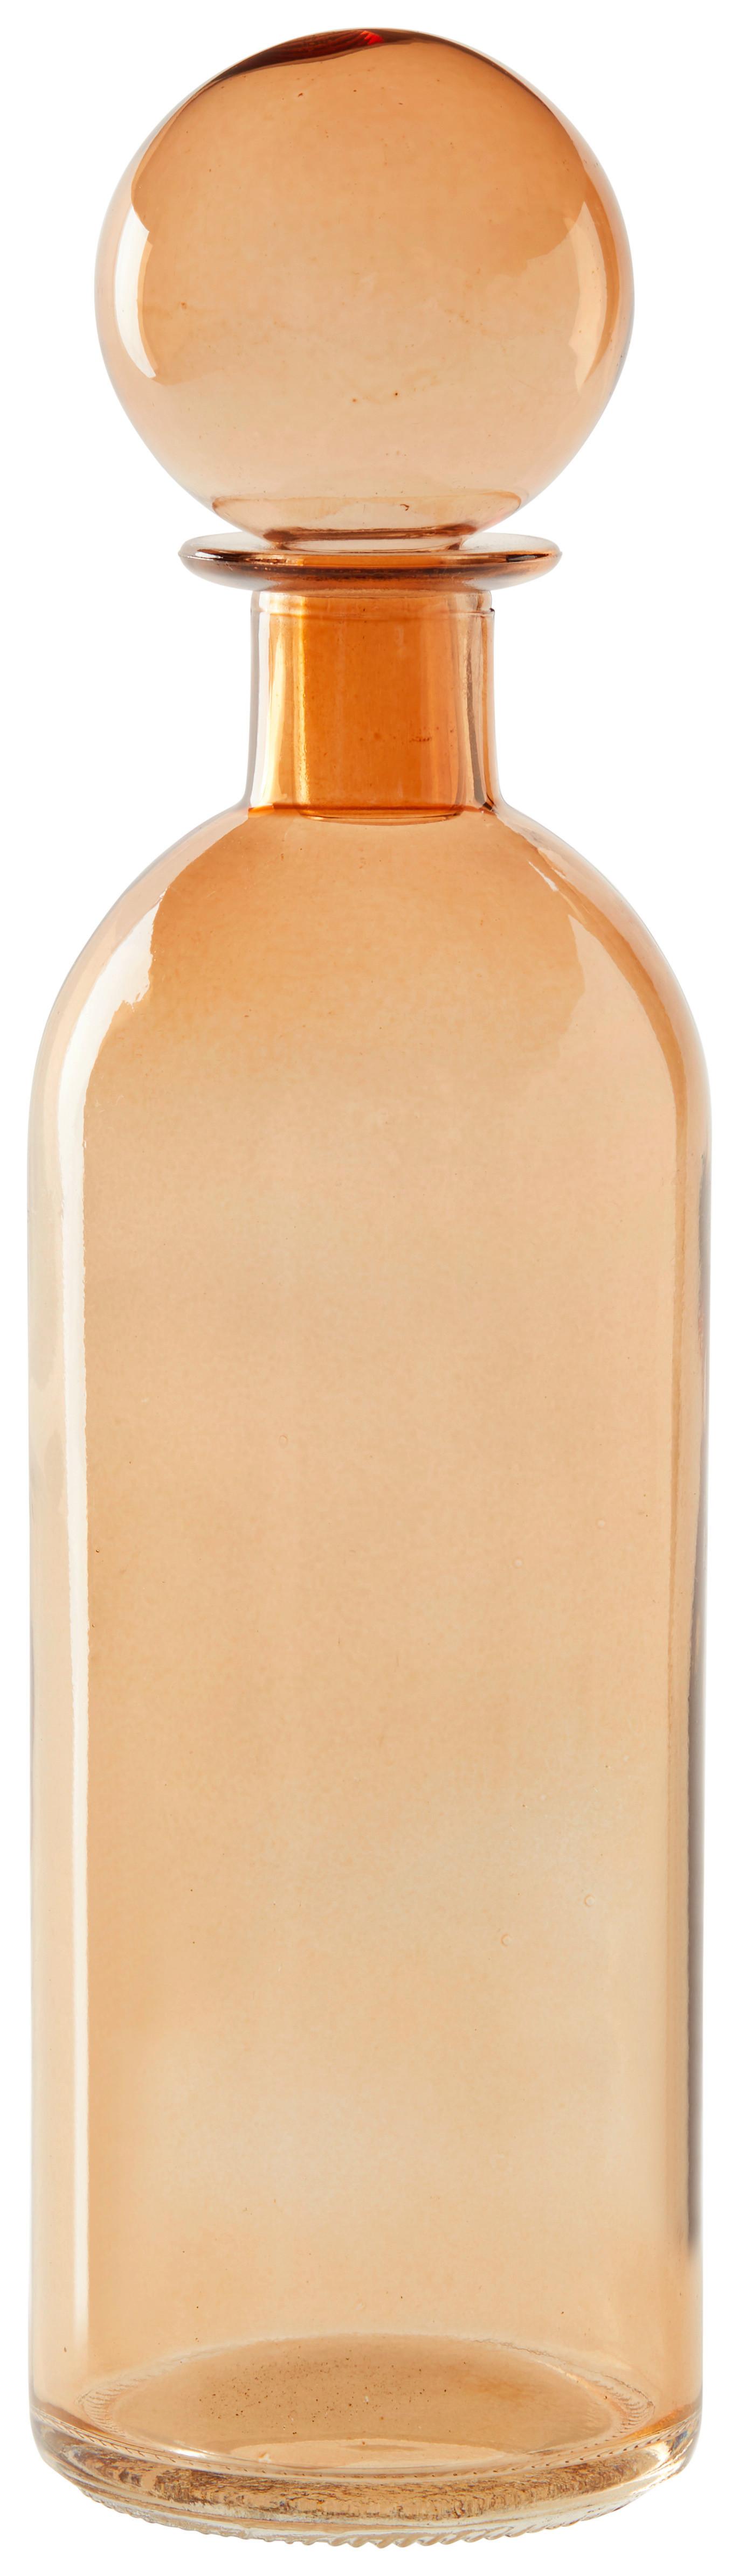 Dekoračná fľaša Alessia - hnedá, sklo (6,5/24cm) - Modern Living